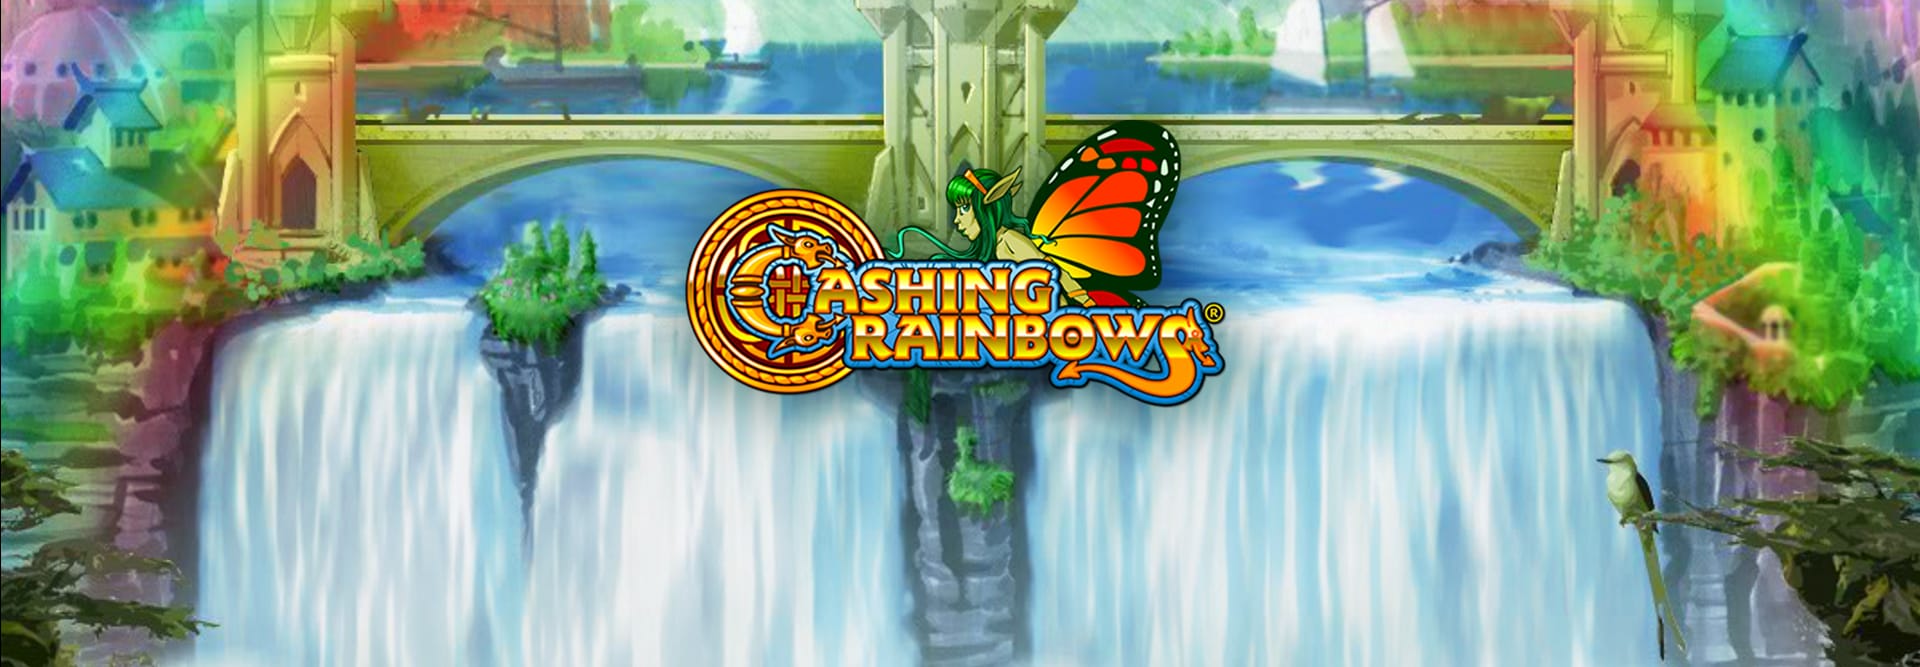 Cashing Rainbows - Game Banner